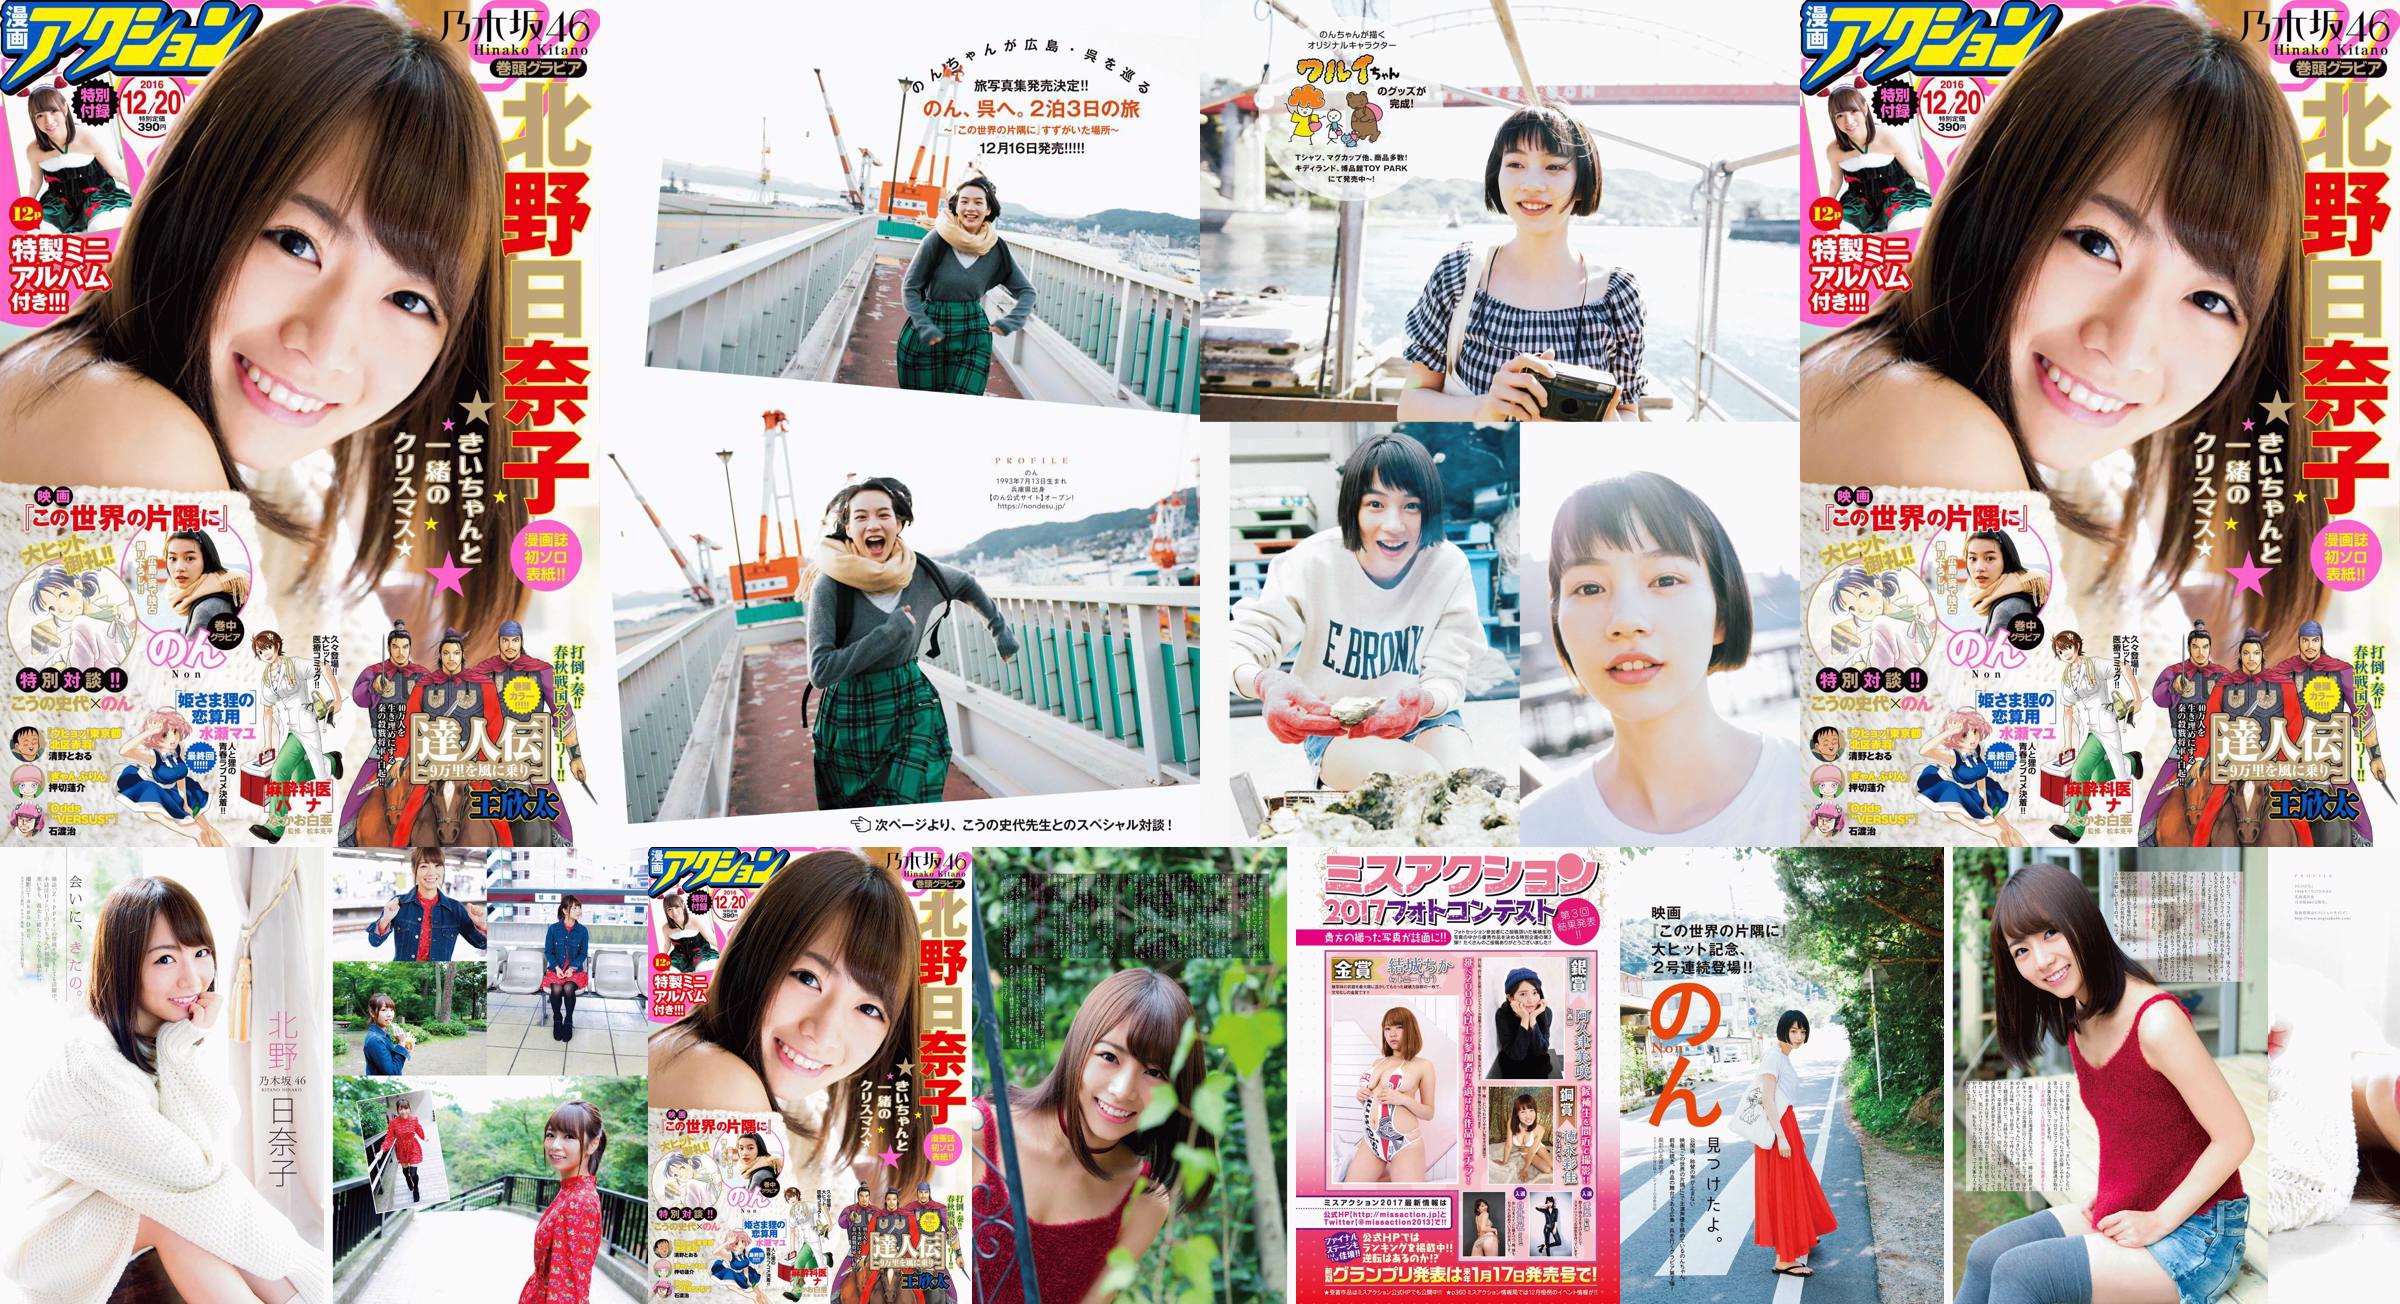 [Manga Action] Kitano Hinako のん 2016 No.24 Photo Magazine No.17188a Page 6